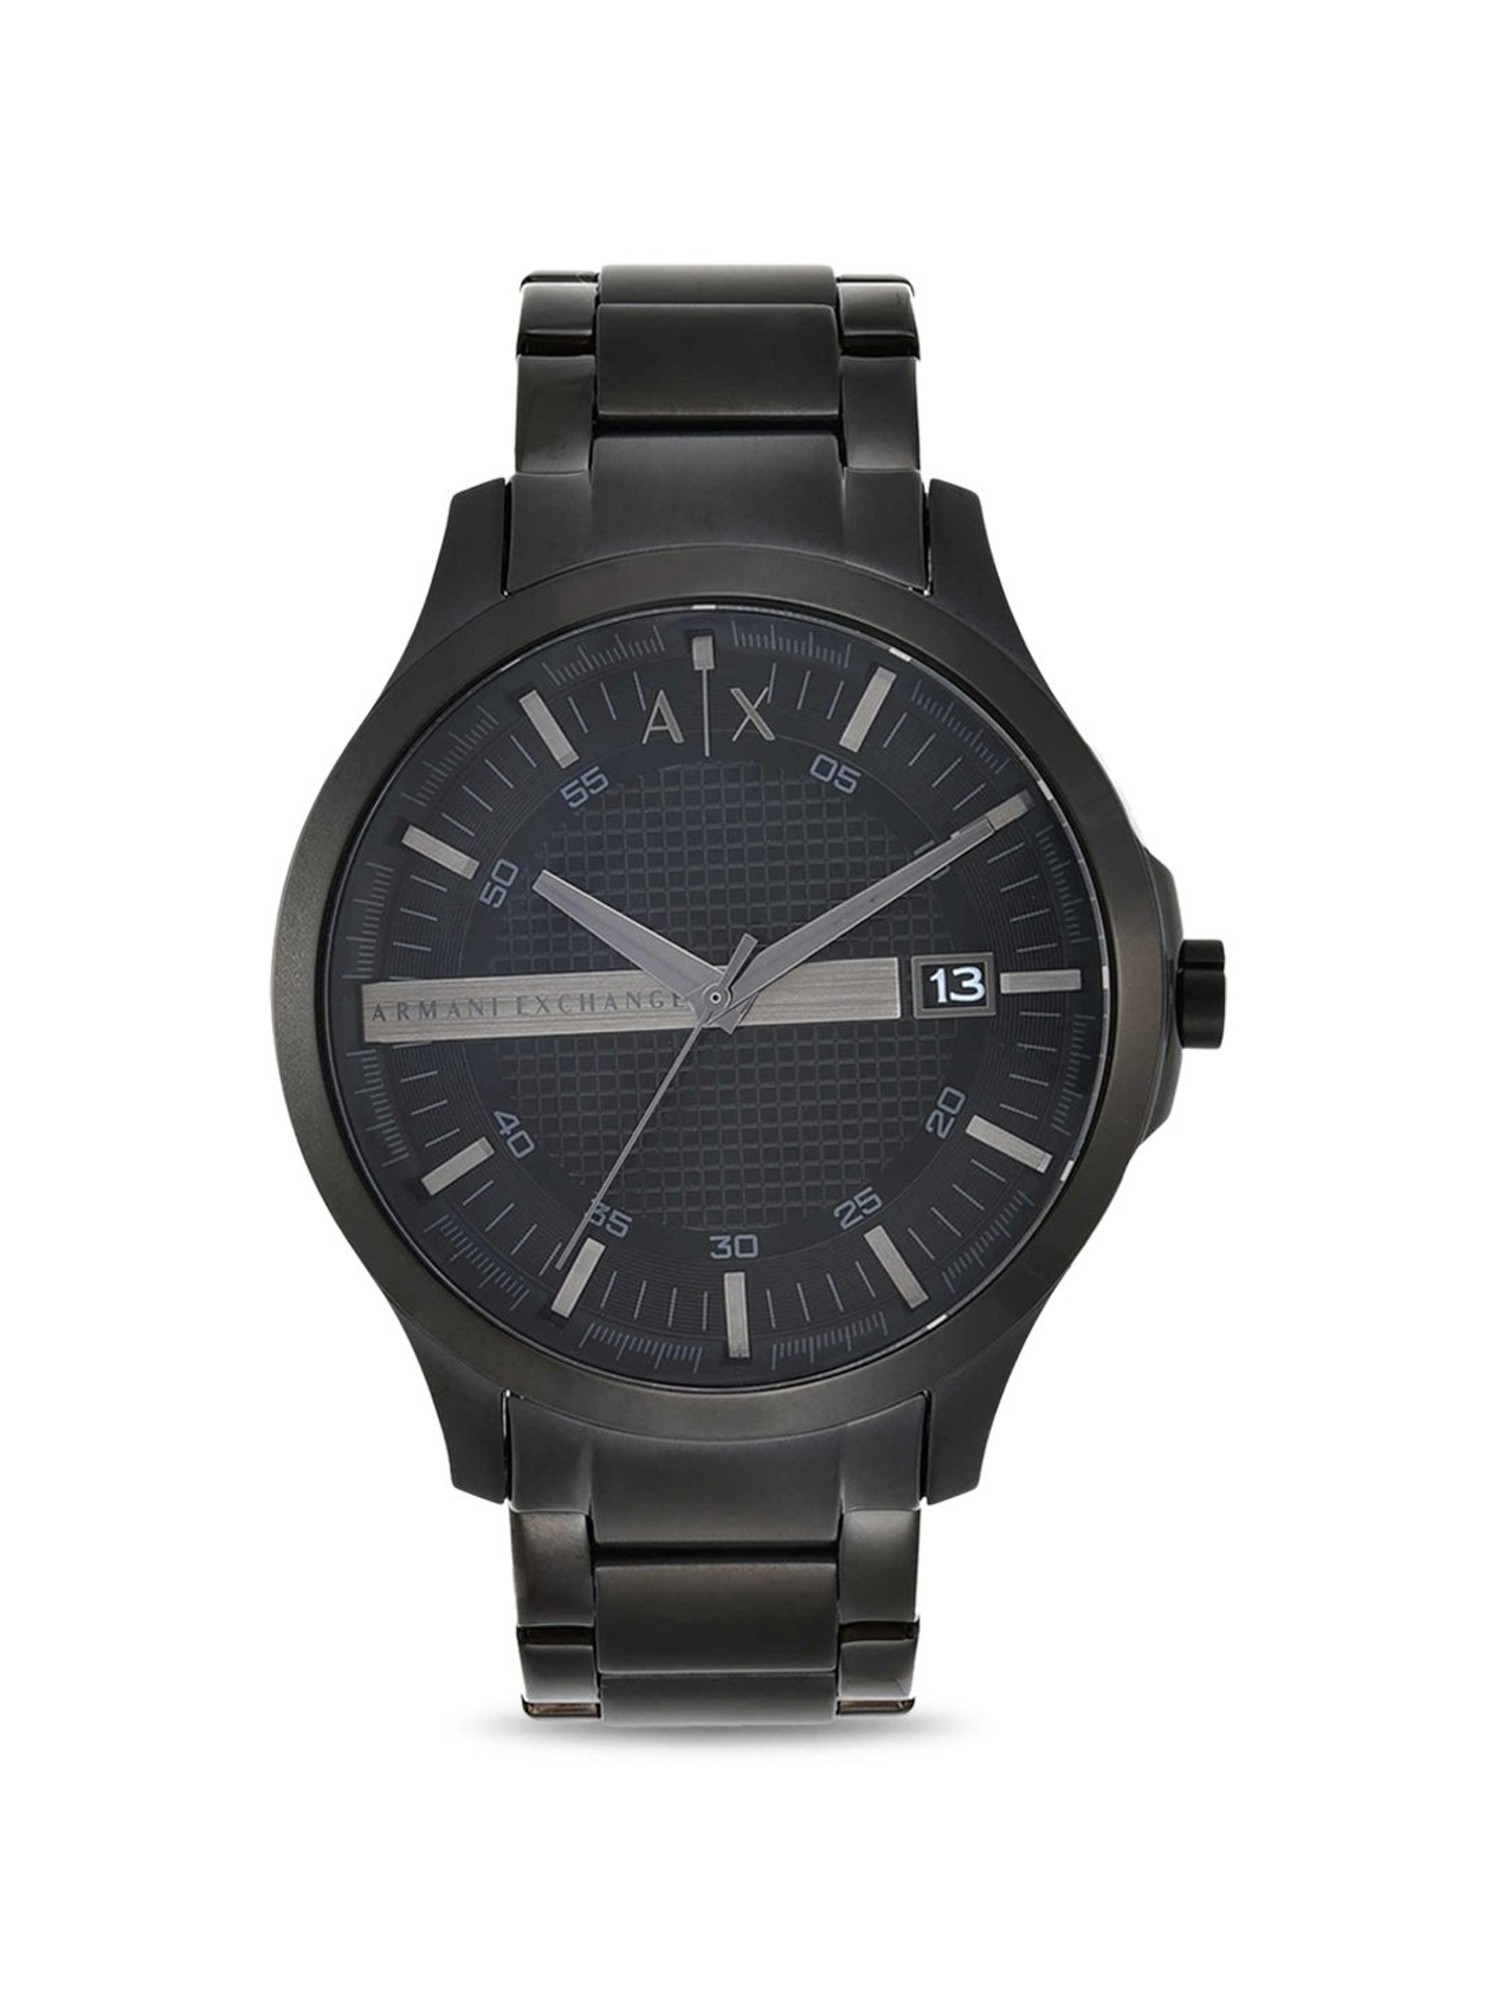 Armani Exchange AX2104 Black Hampton Watch For Men-ARMANI EXCHANGE ...